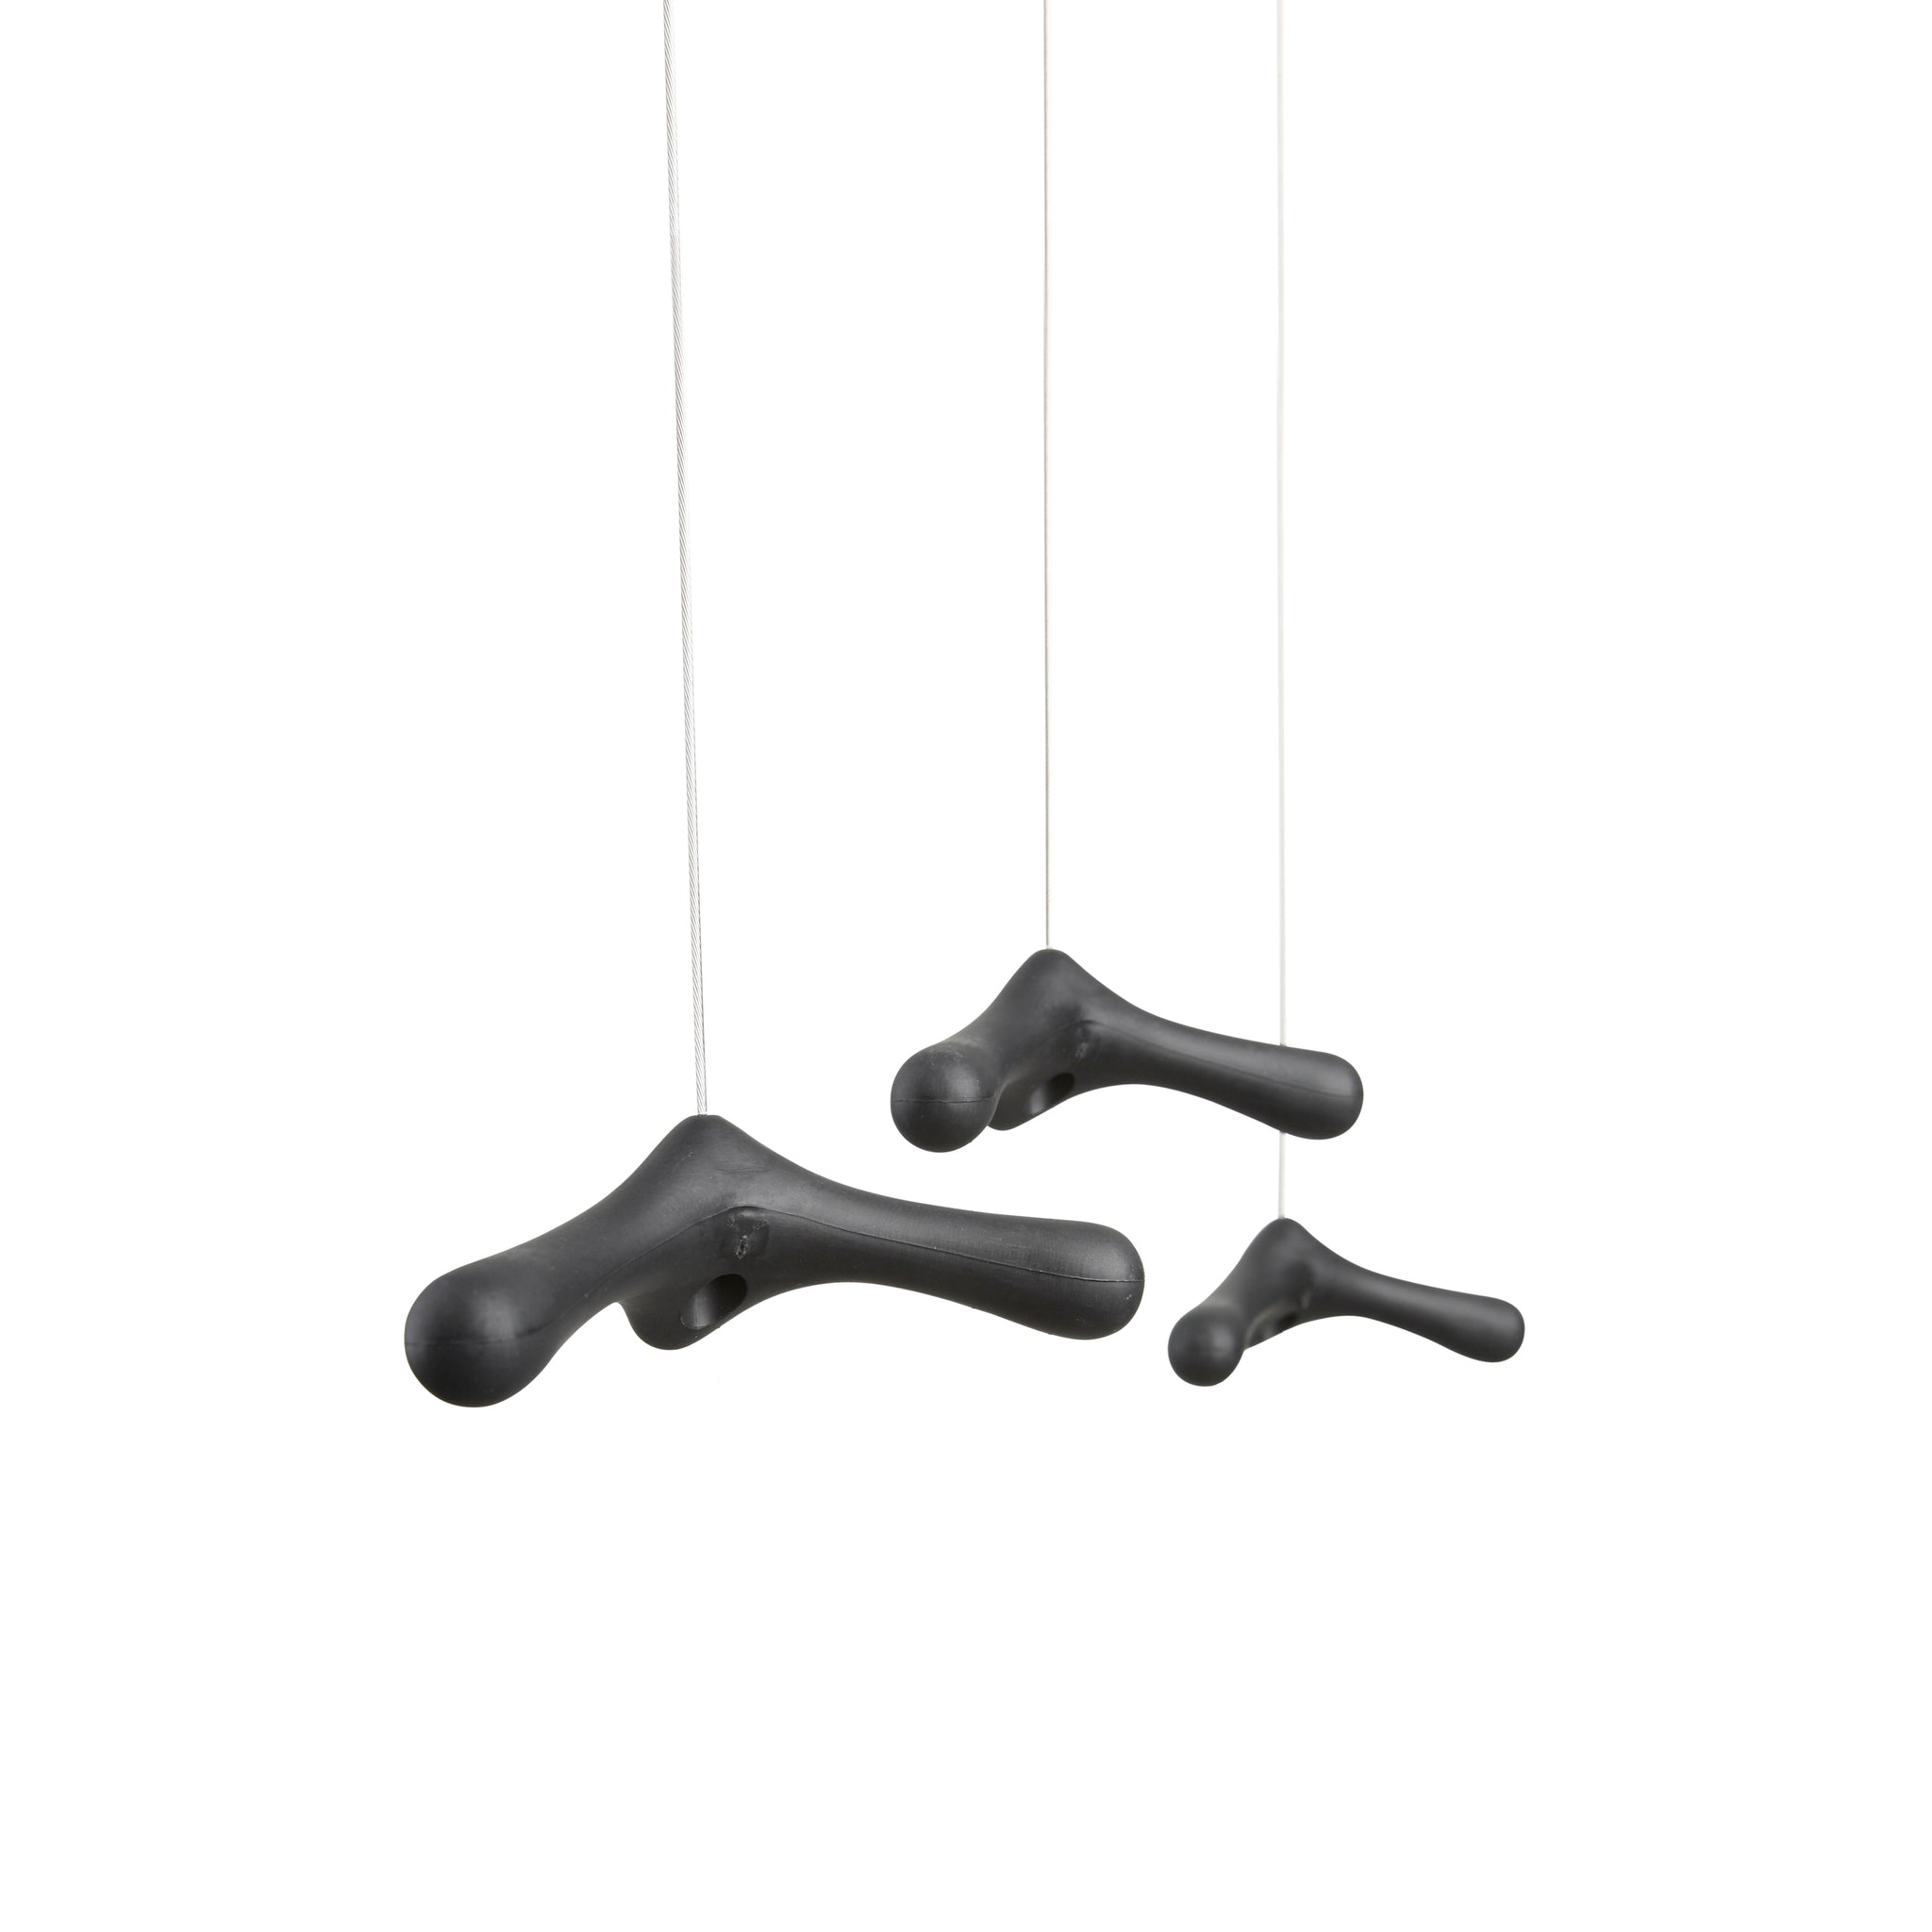 Flying Hooks Set van 4│Bos en Couvée voor Goods│Kapstok│art. FH 10.04│3 haken zonder jas